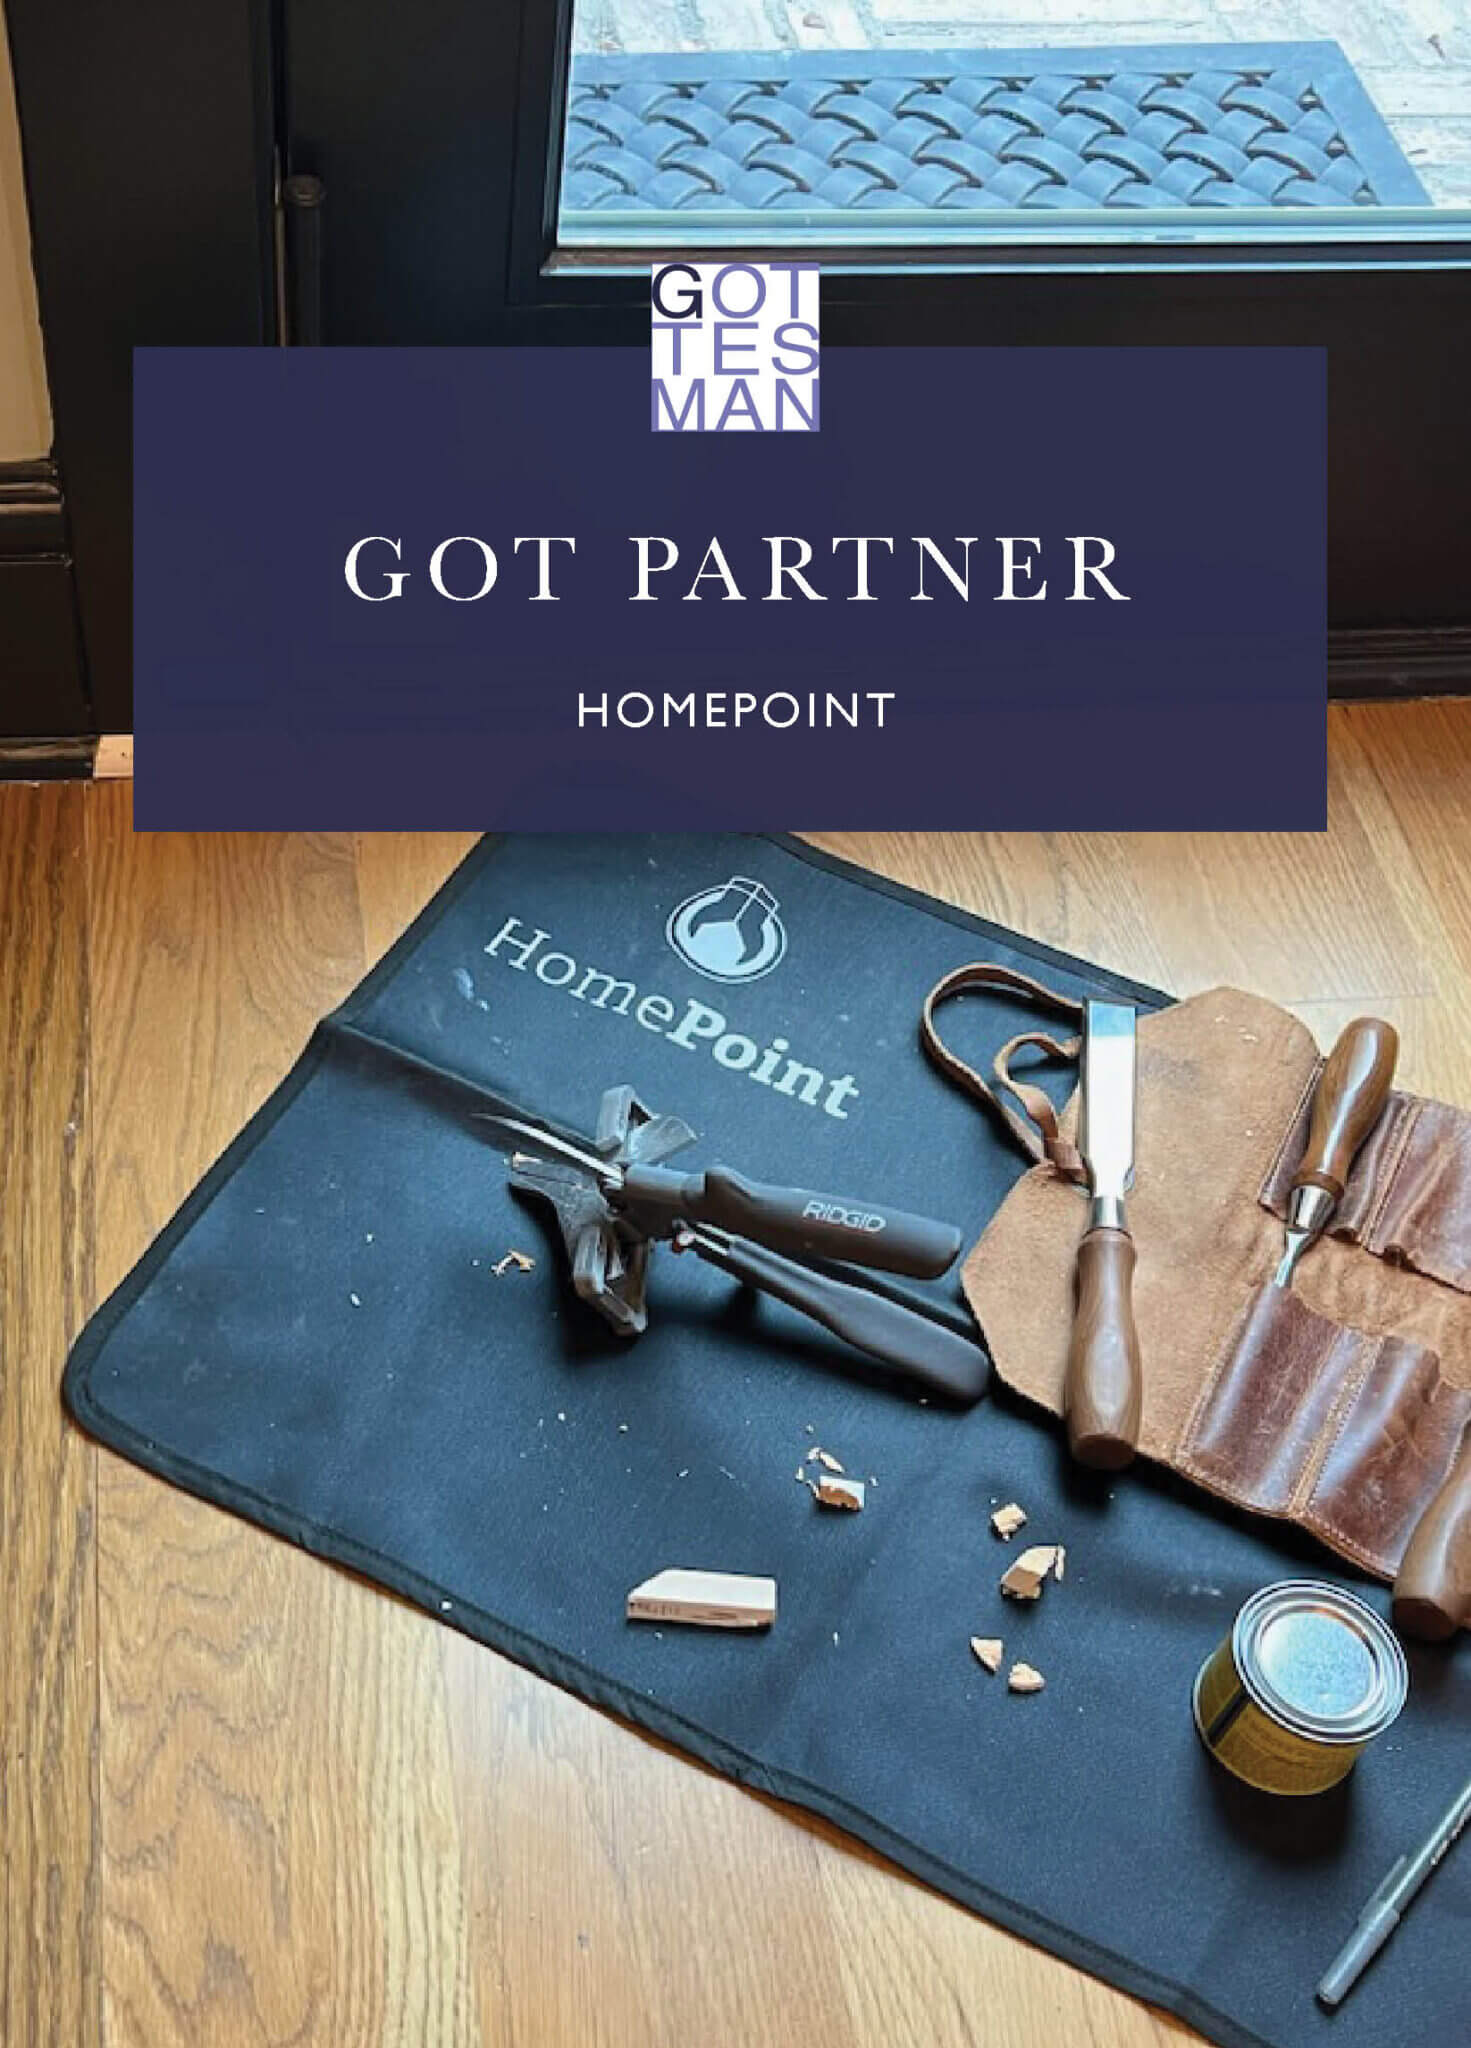 "Got Partner: Homepoint"